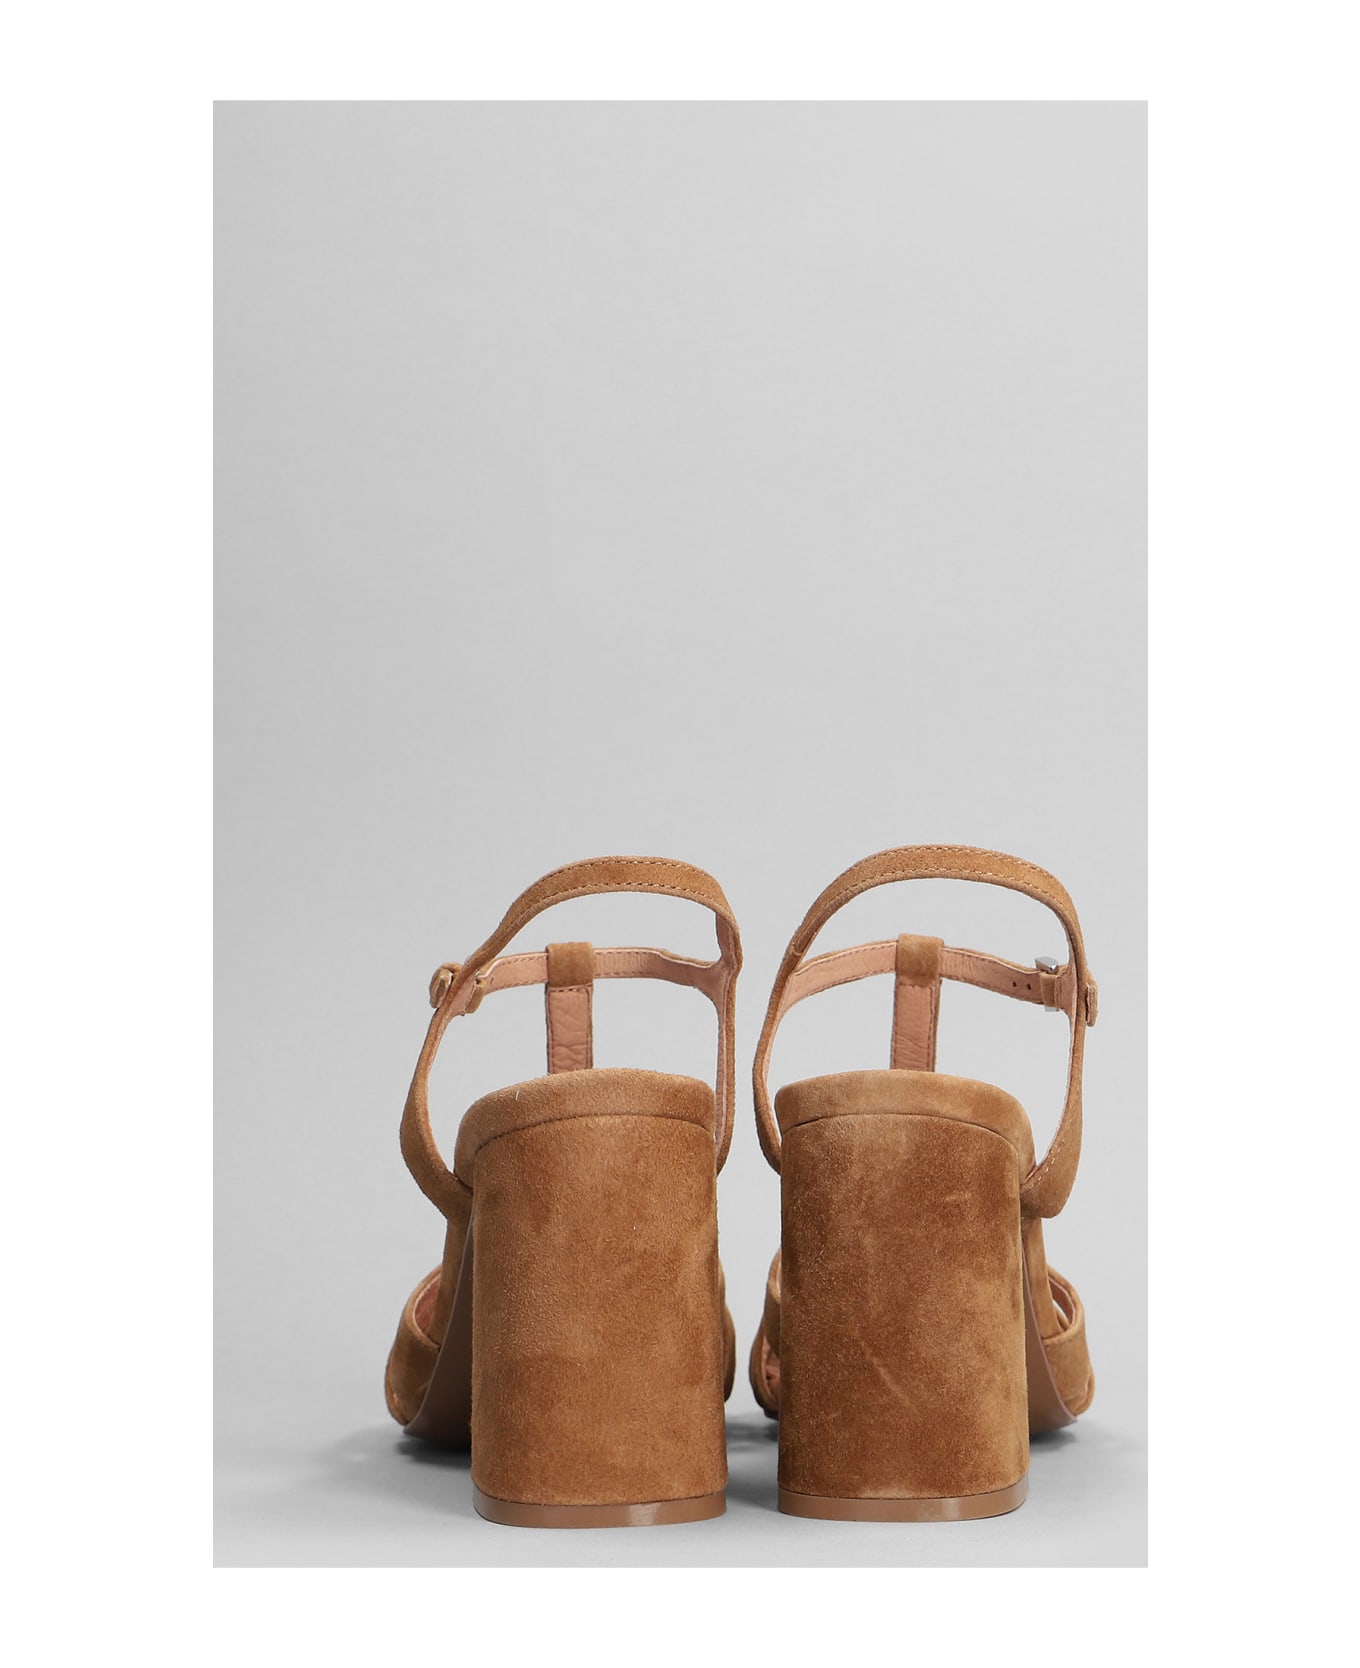 Bibi Lou Azalea Sandals In Leather Color Suede - leather color